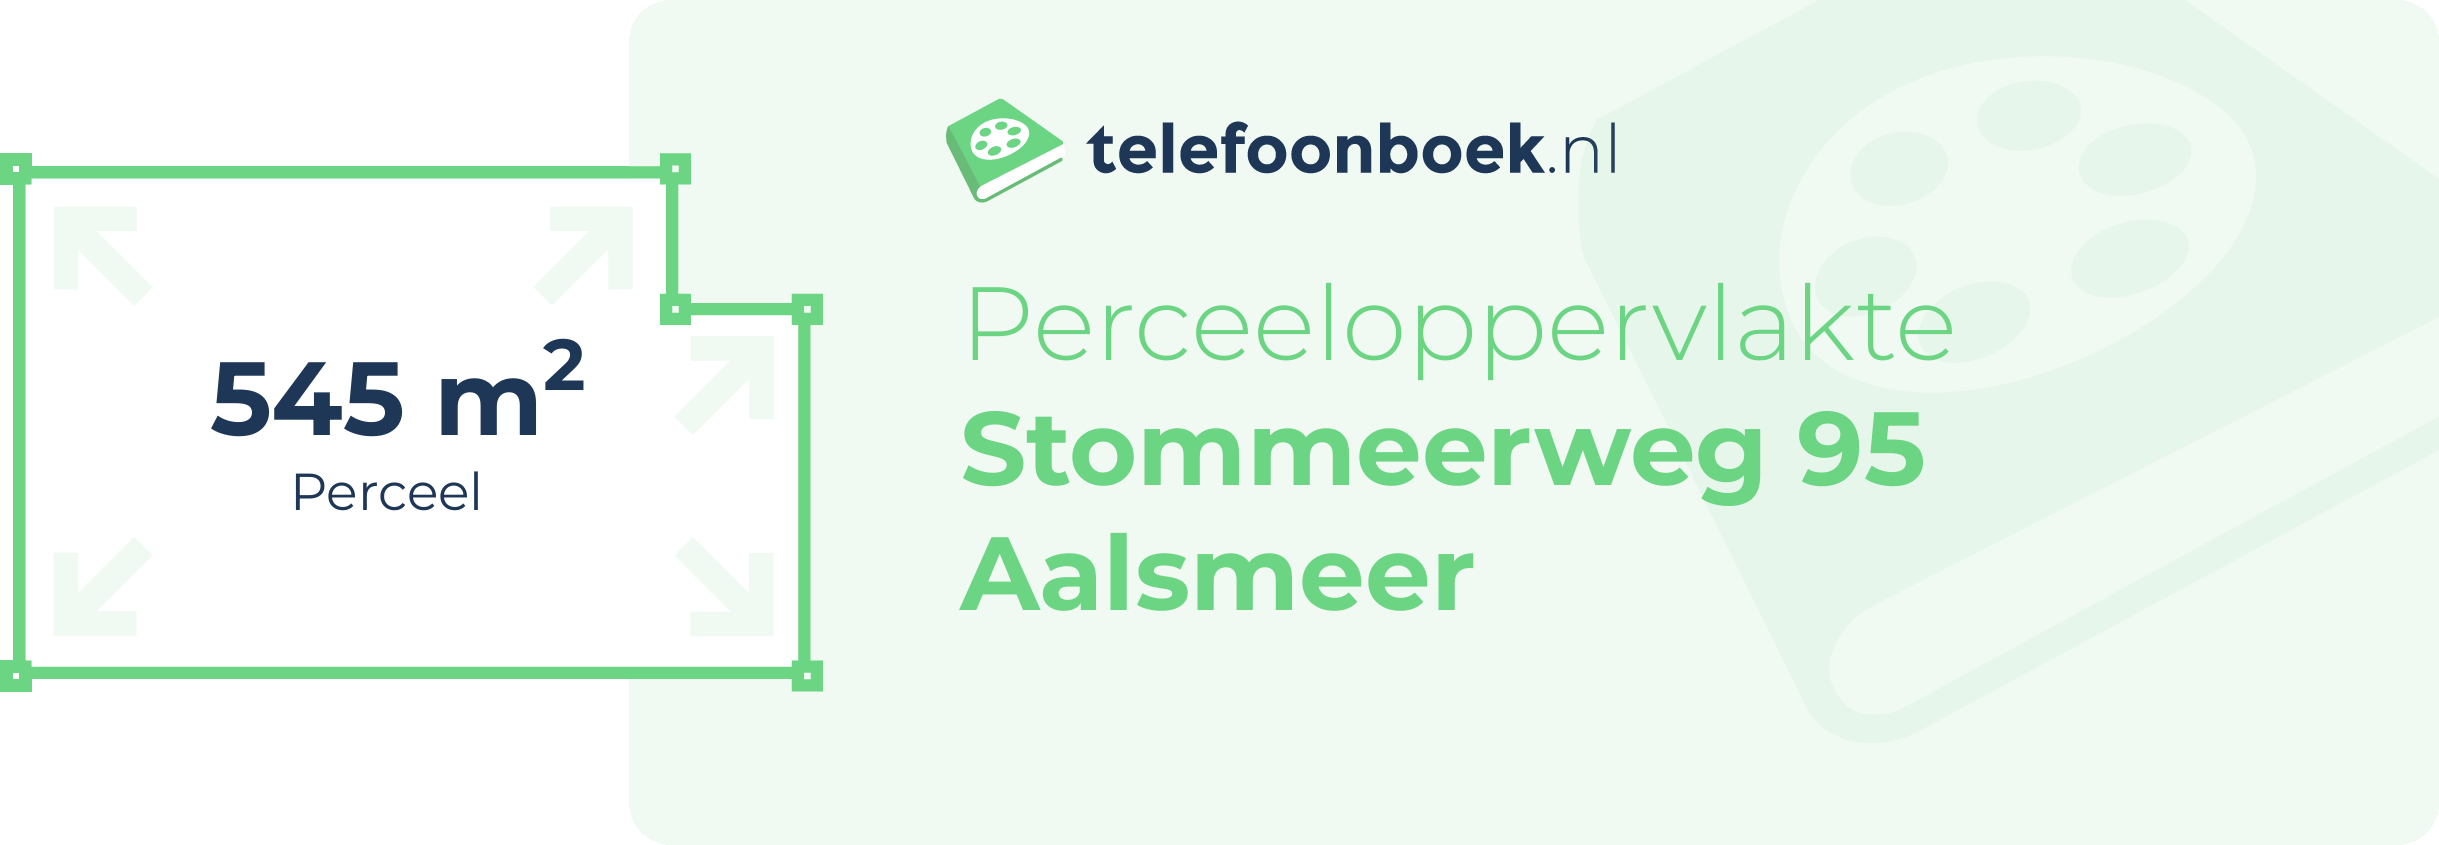 Perceeloppervlakte Stommeerweg 95 Aalsmeer